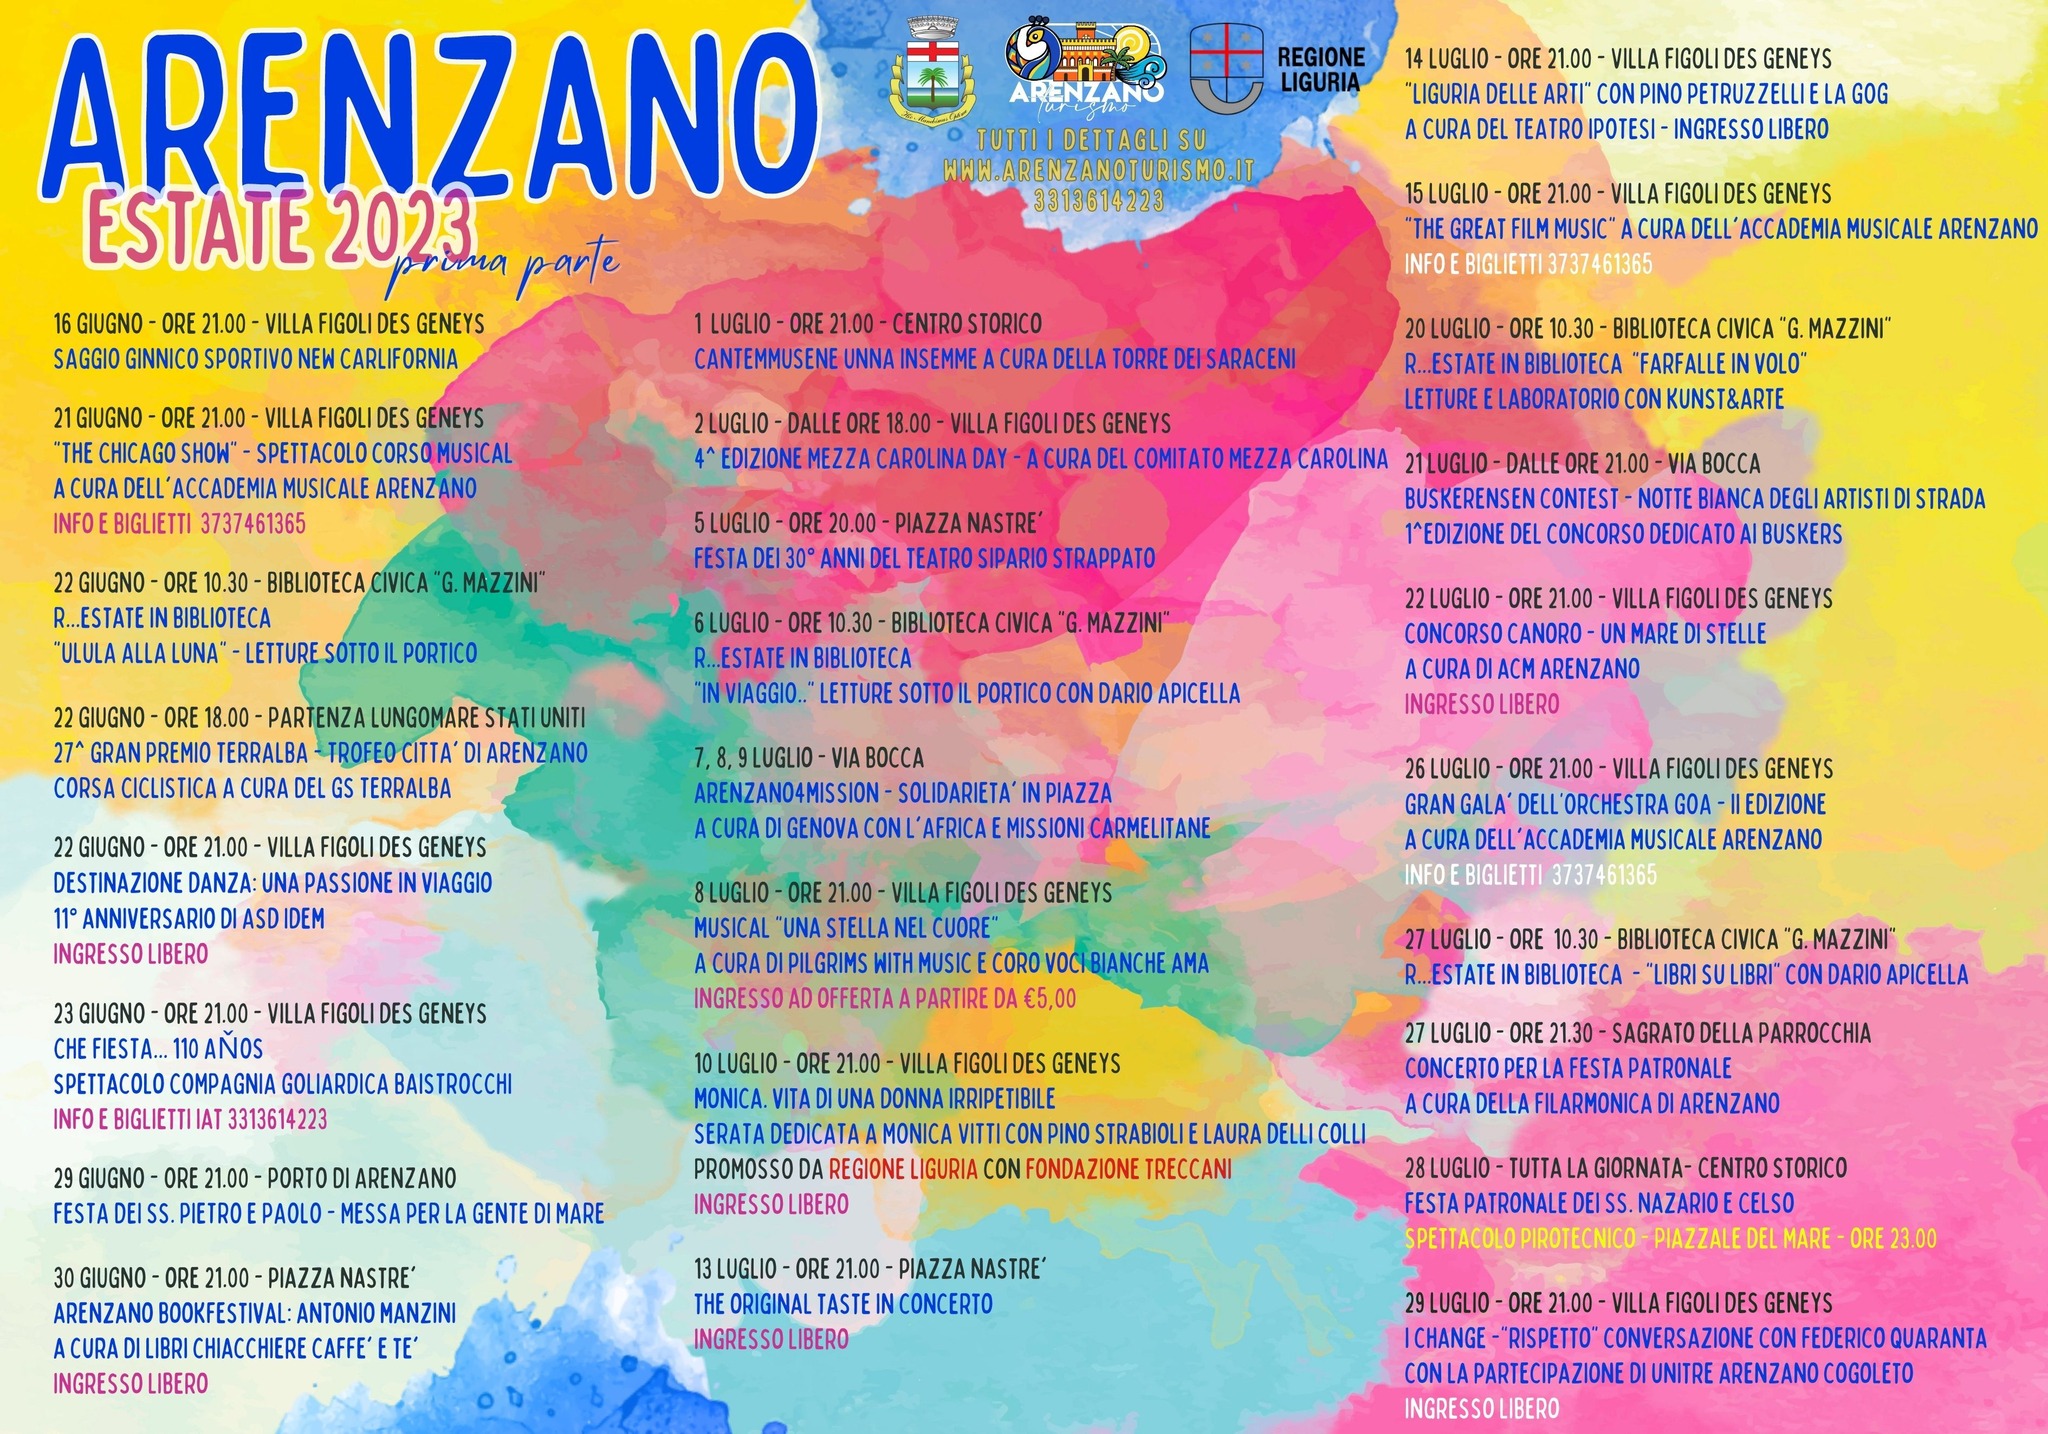 Arenzano BookFestival: ospite speciale Antonio Manzini - Cronache Ponentine